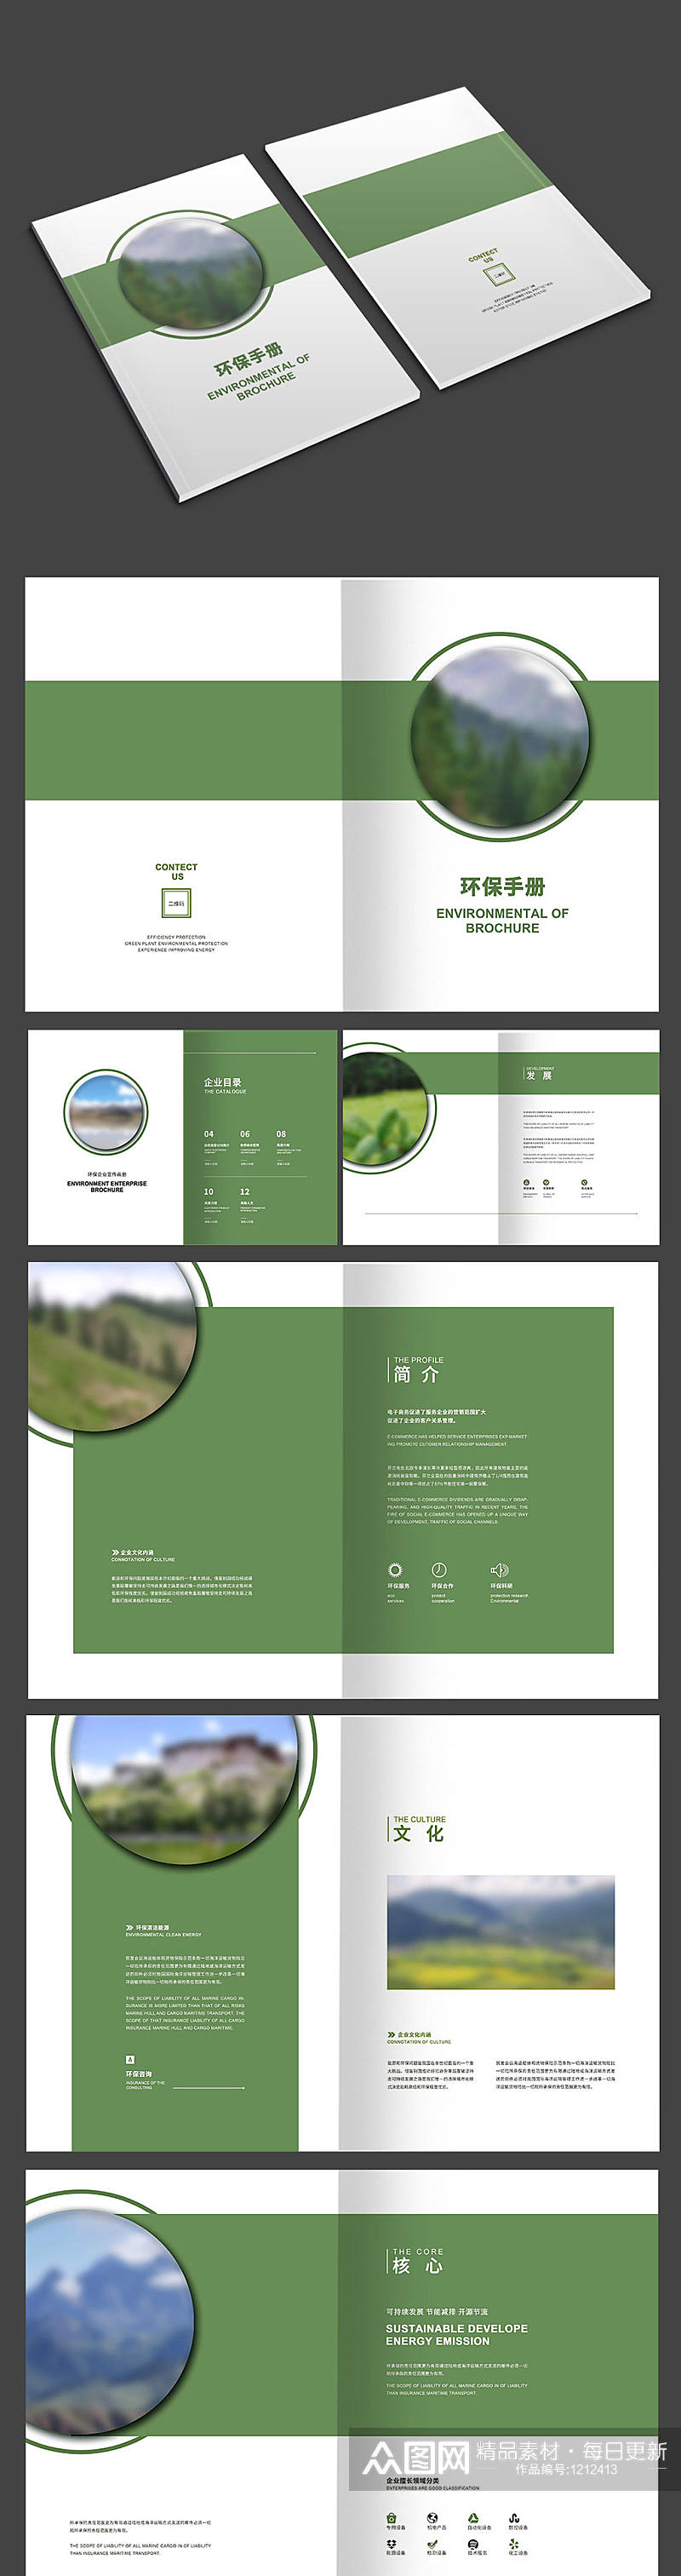 绿色高级环保画册设计素材